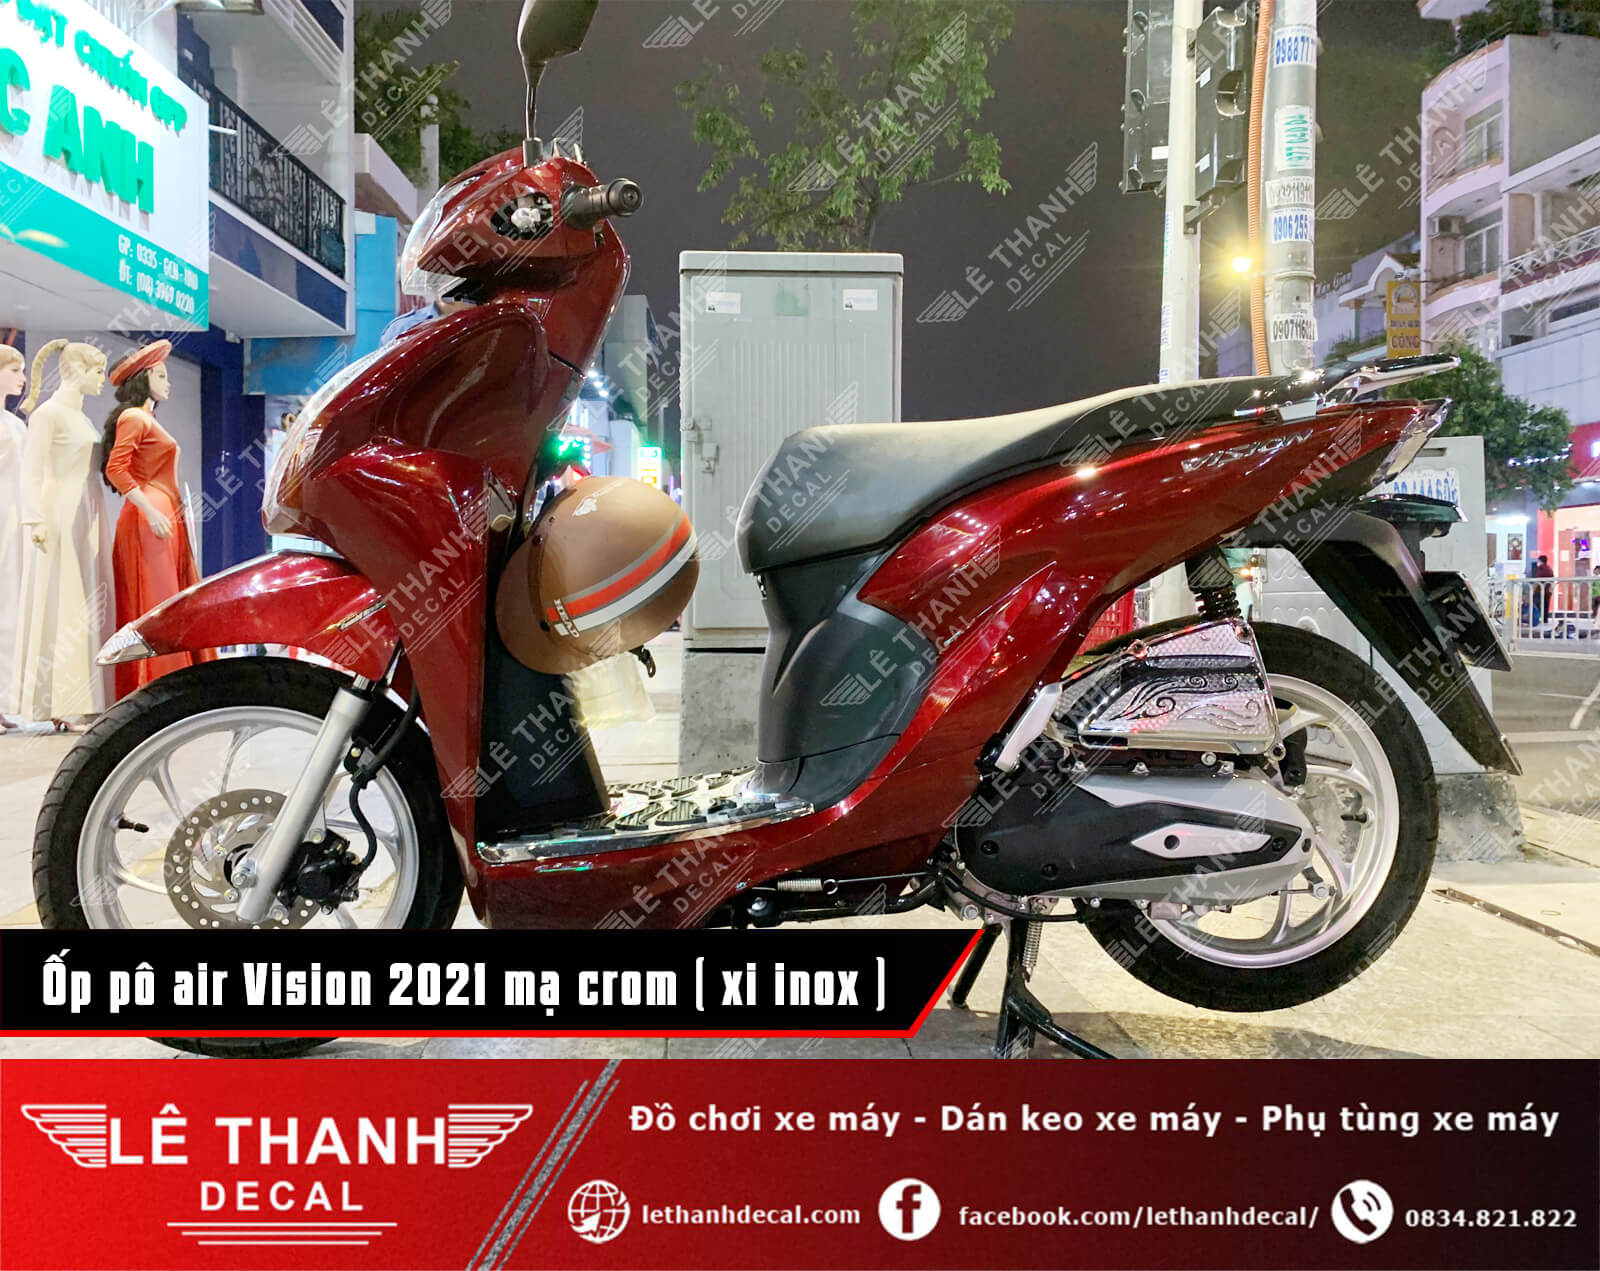 Tổng hợp, báo giá đồ chơi xe máy Vision 2021 xi mạ crom